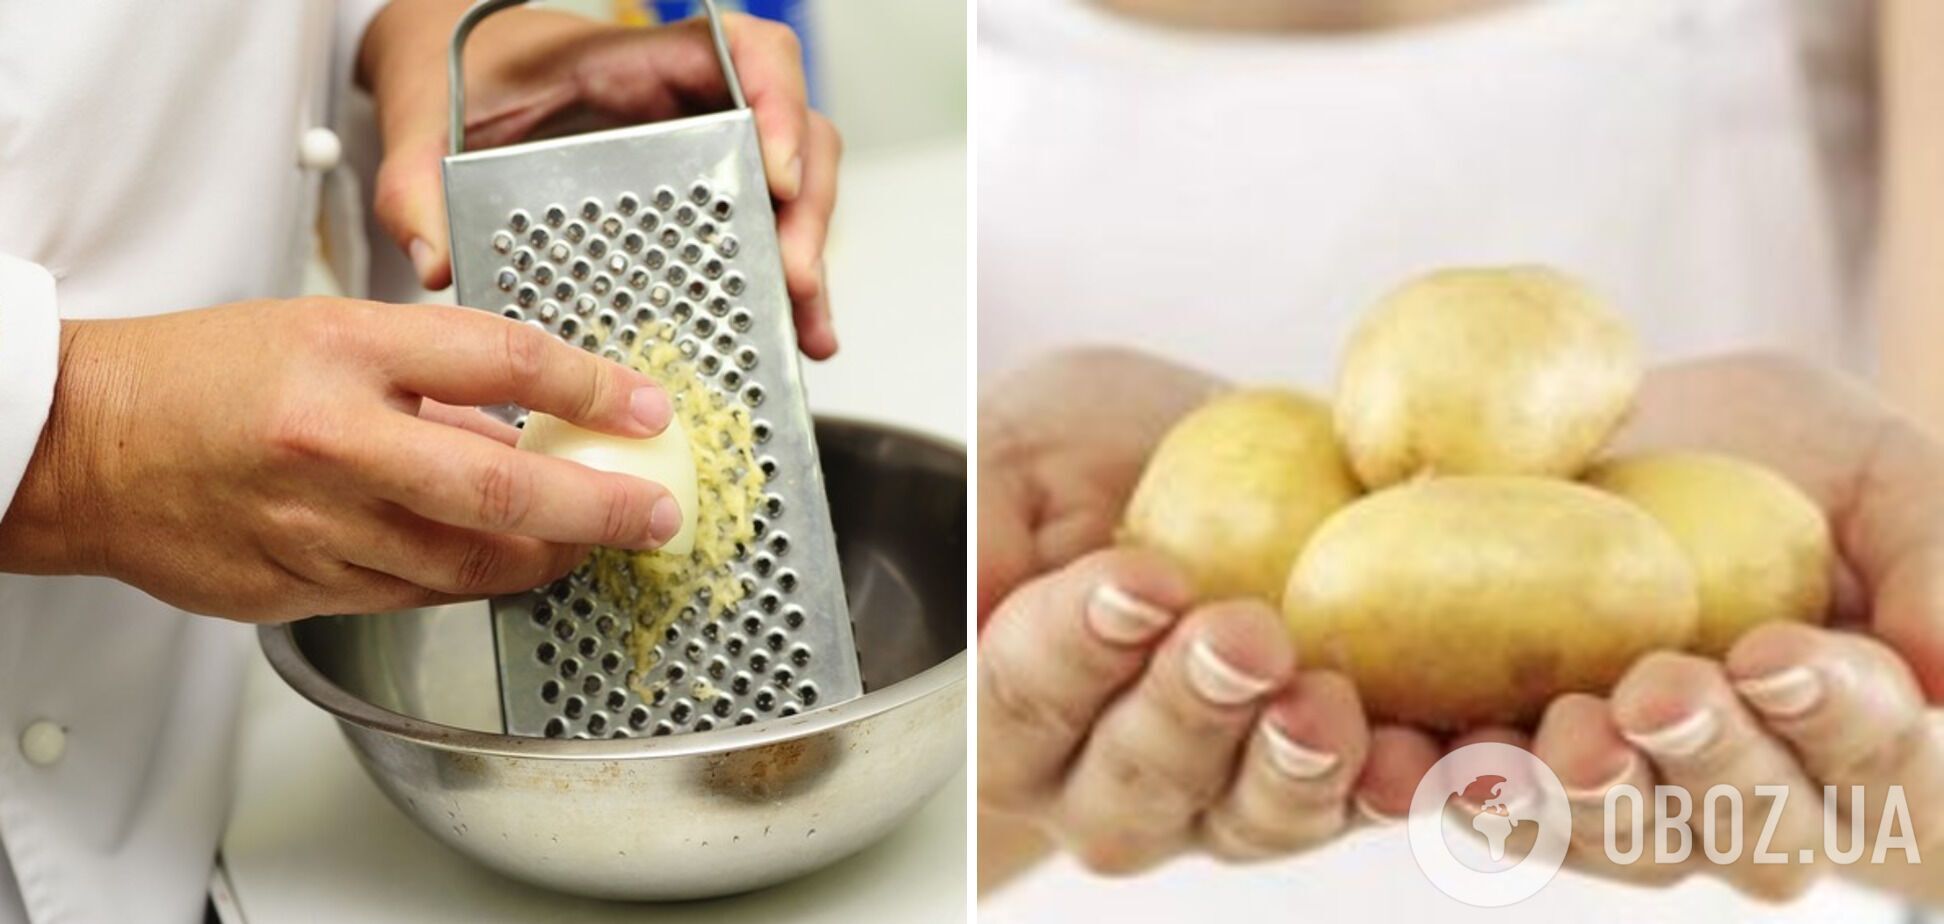 Натирание картофеля для блюда